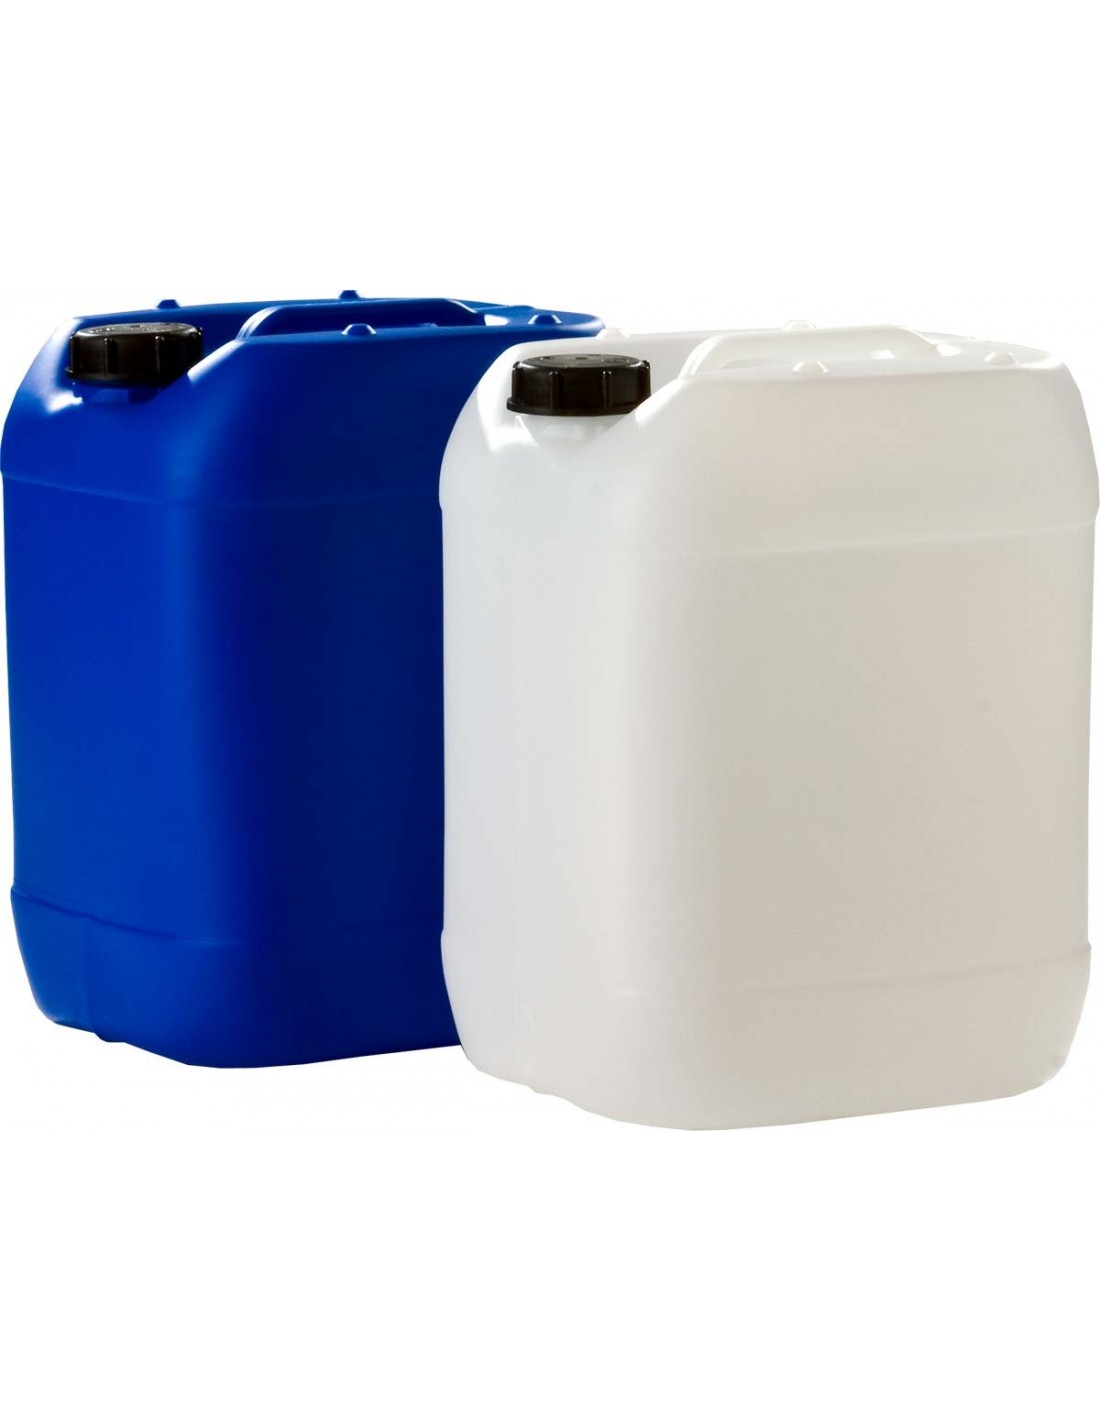 20 Stück 5 Liter Kanister blau Camping Plastekanister Wasserkanister NEU DIN51. 